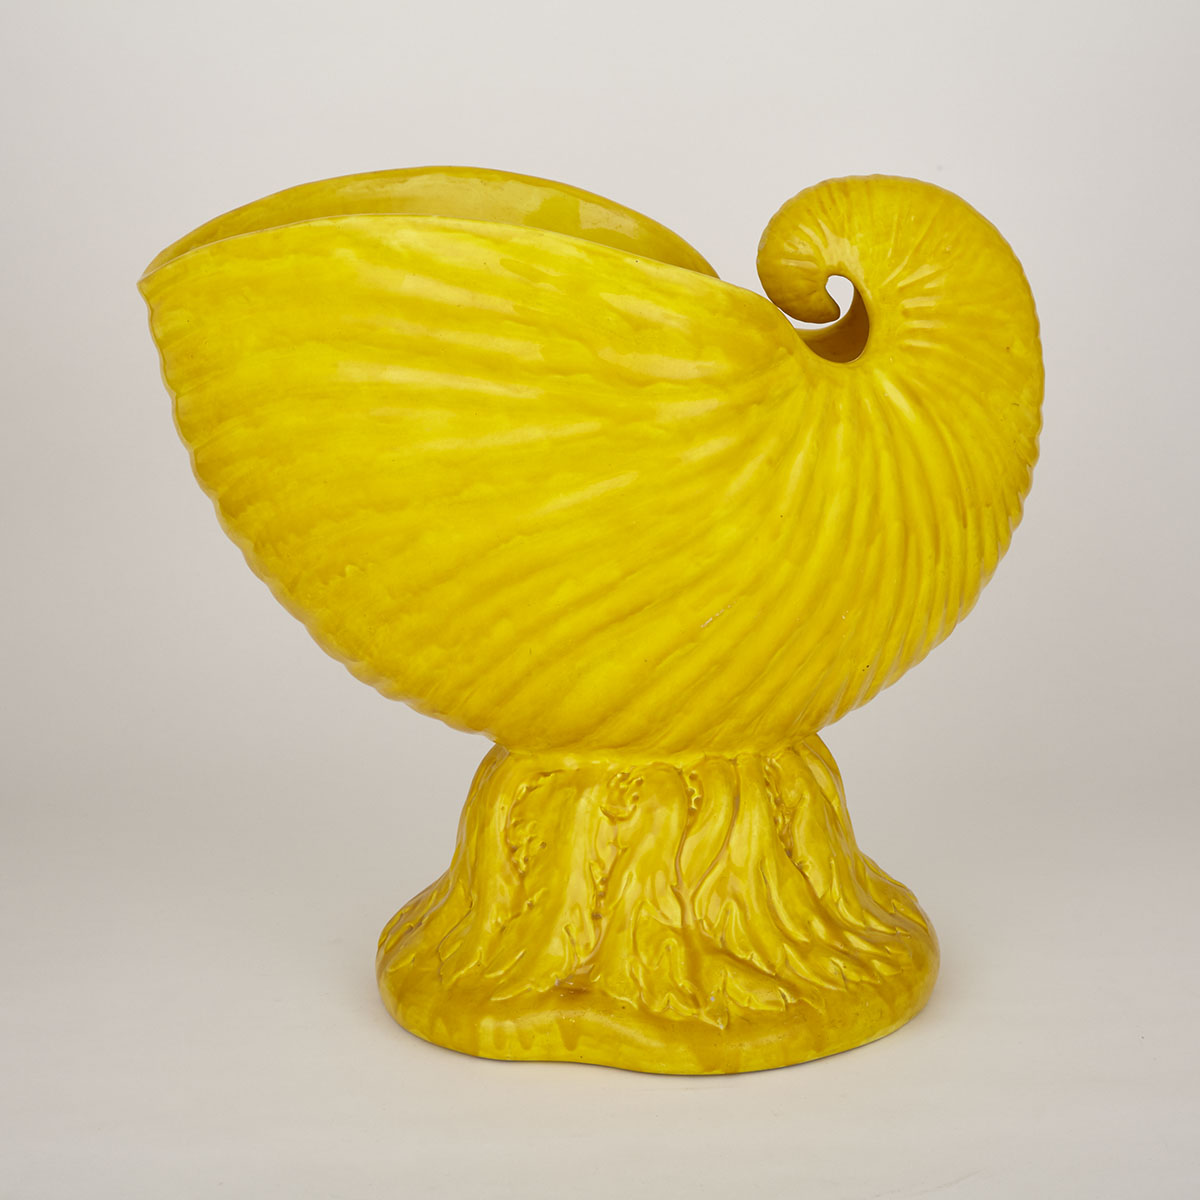 Mintons Yellow-Glazed Nautilus Shell Jardinière, 1882